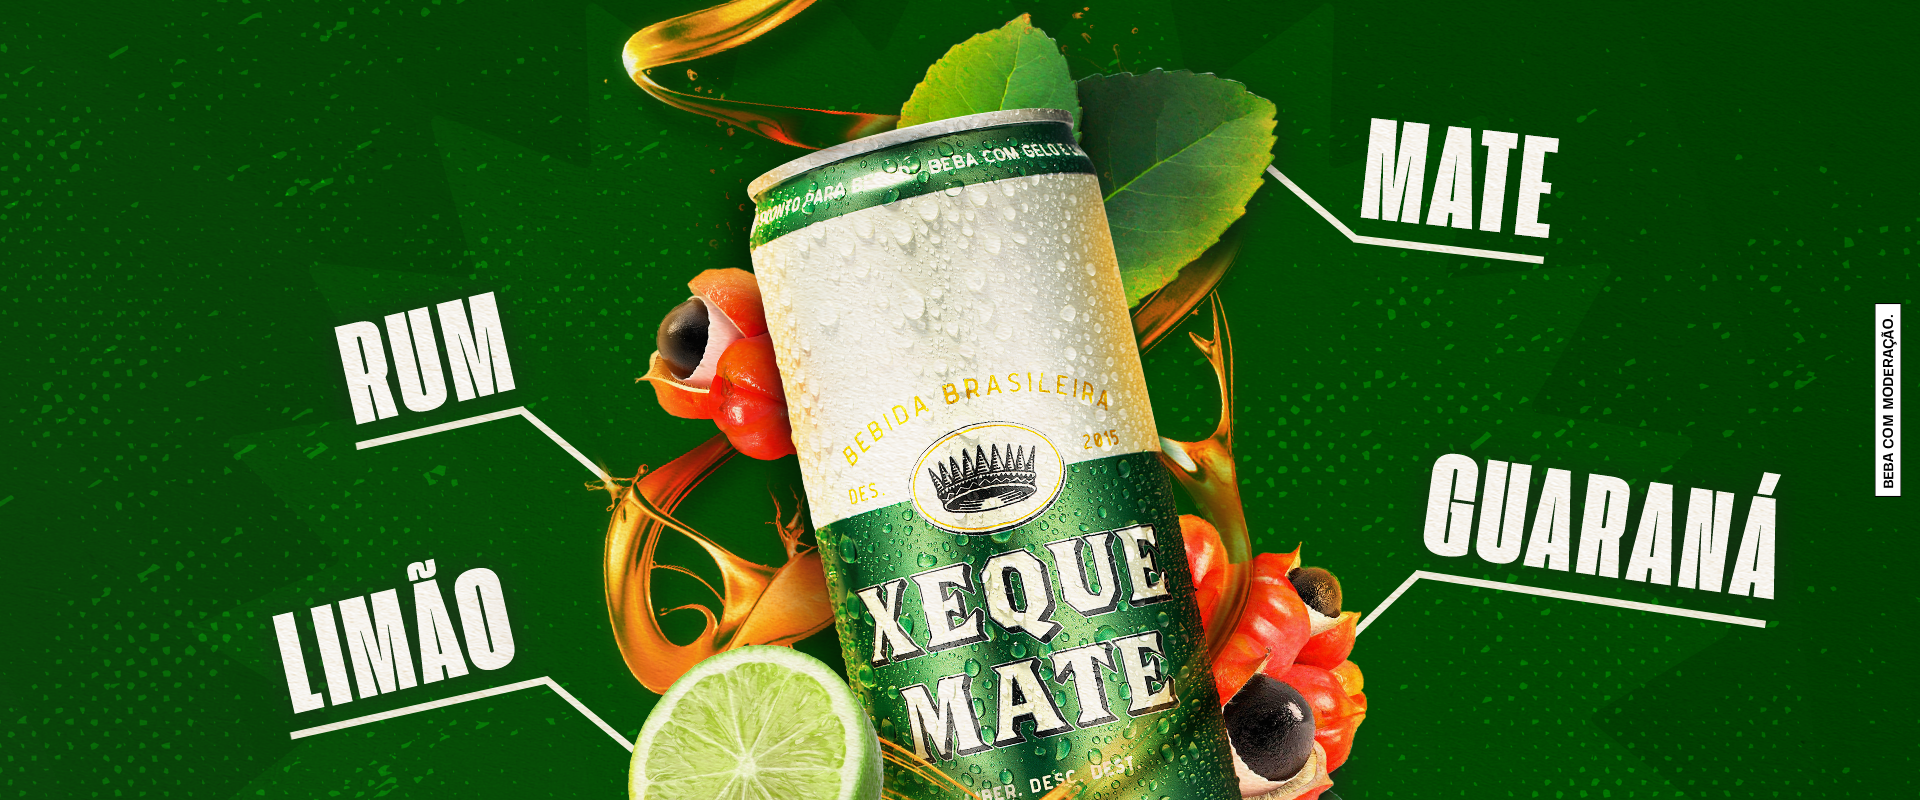 Xeque Mate - 355 ml - Bebidas BH Delivery - ZapVendas (31) 9.7574-1007